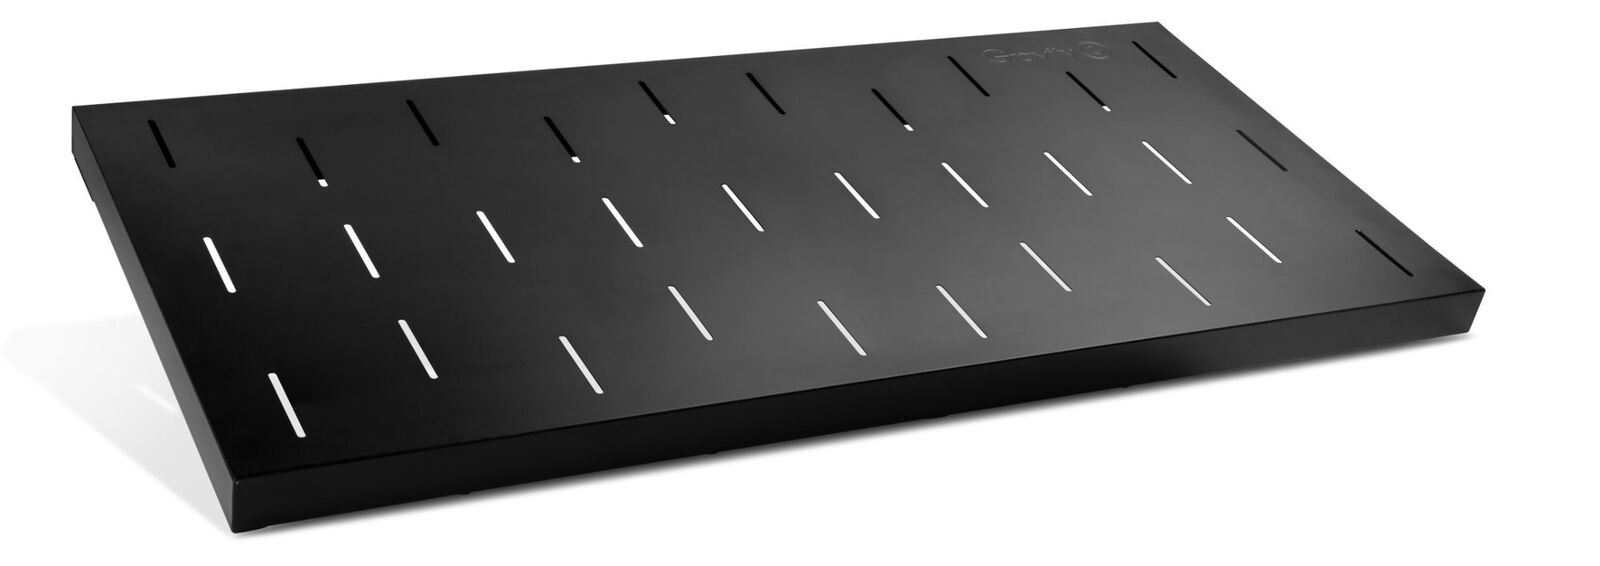 B-WARE Gravity KS RD 1 Auflagetisch für X-Keyboard Ständer Mixer Stahl Tisch